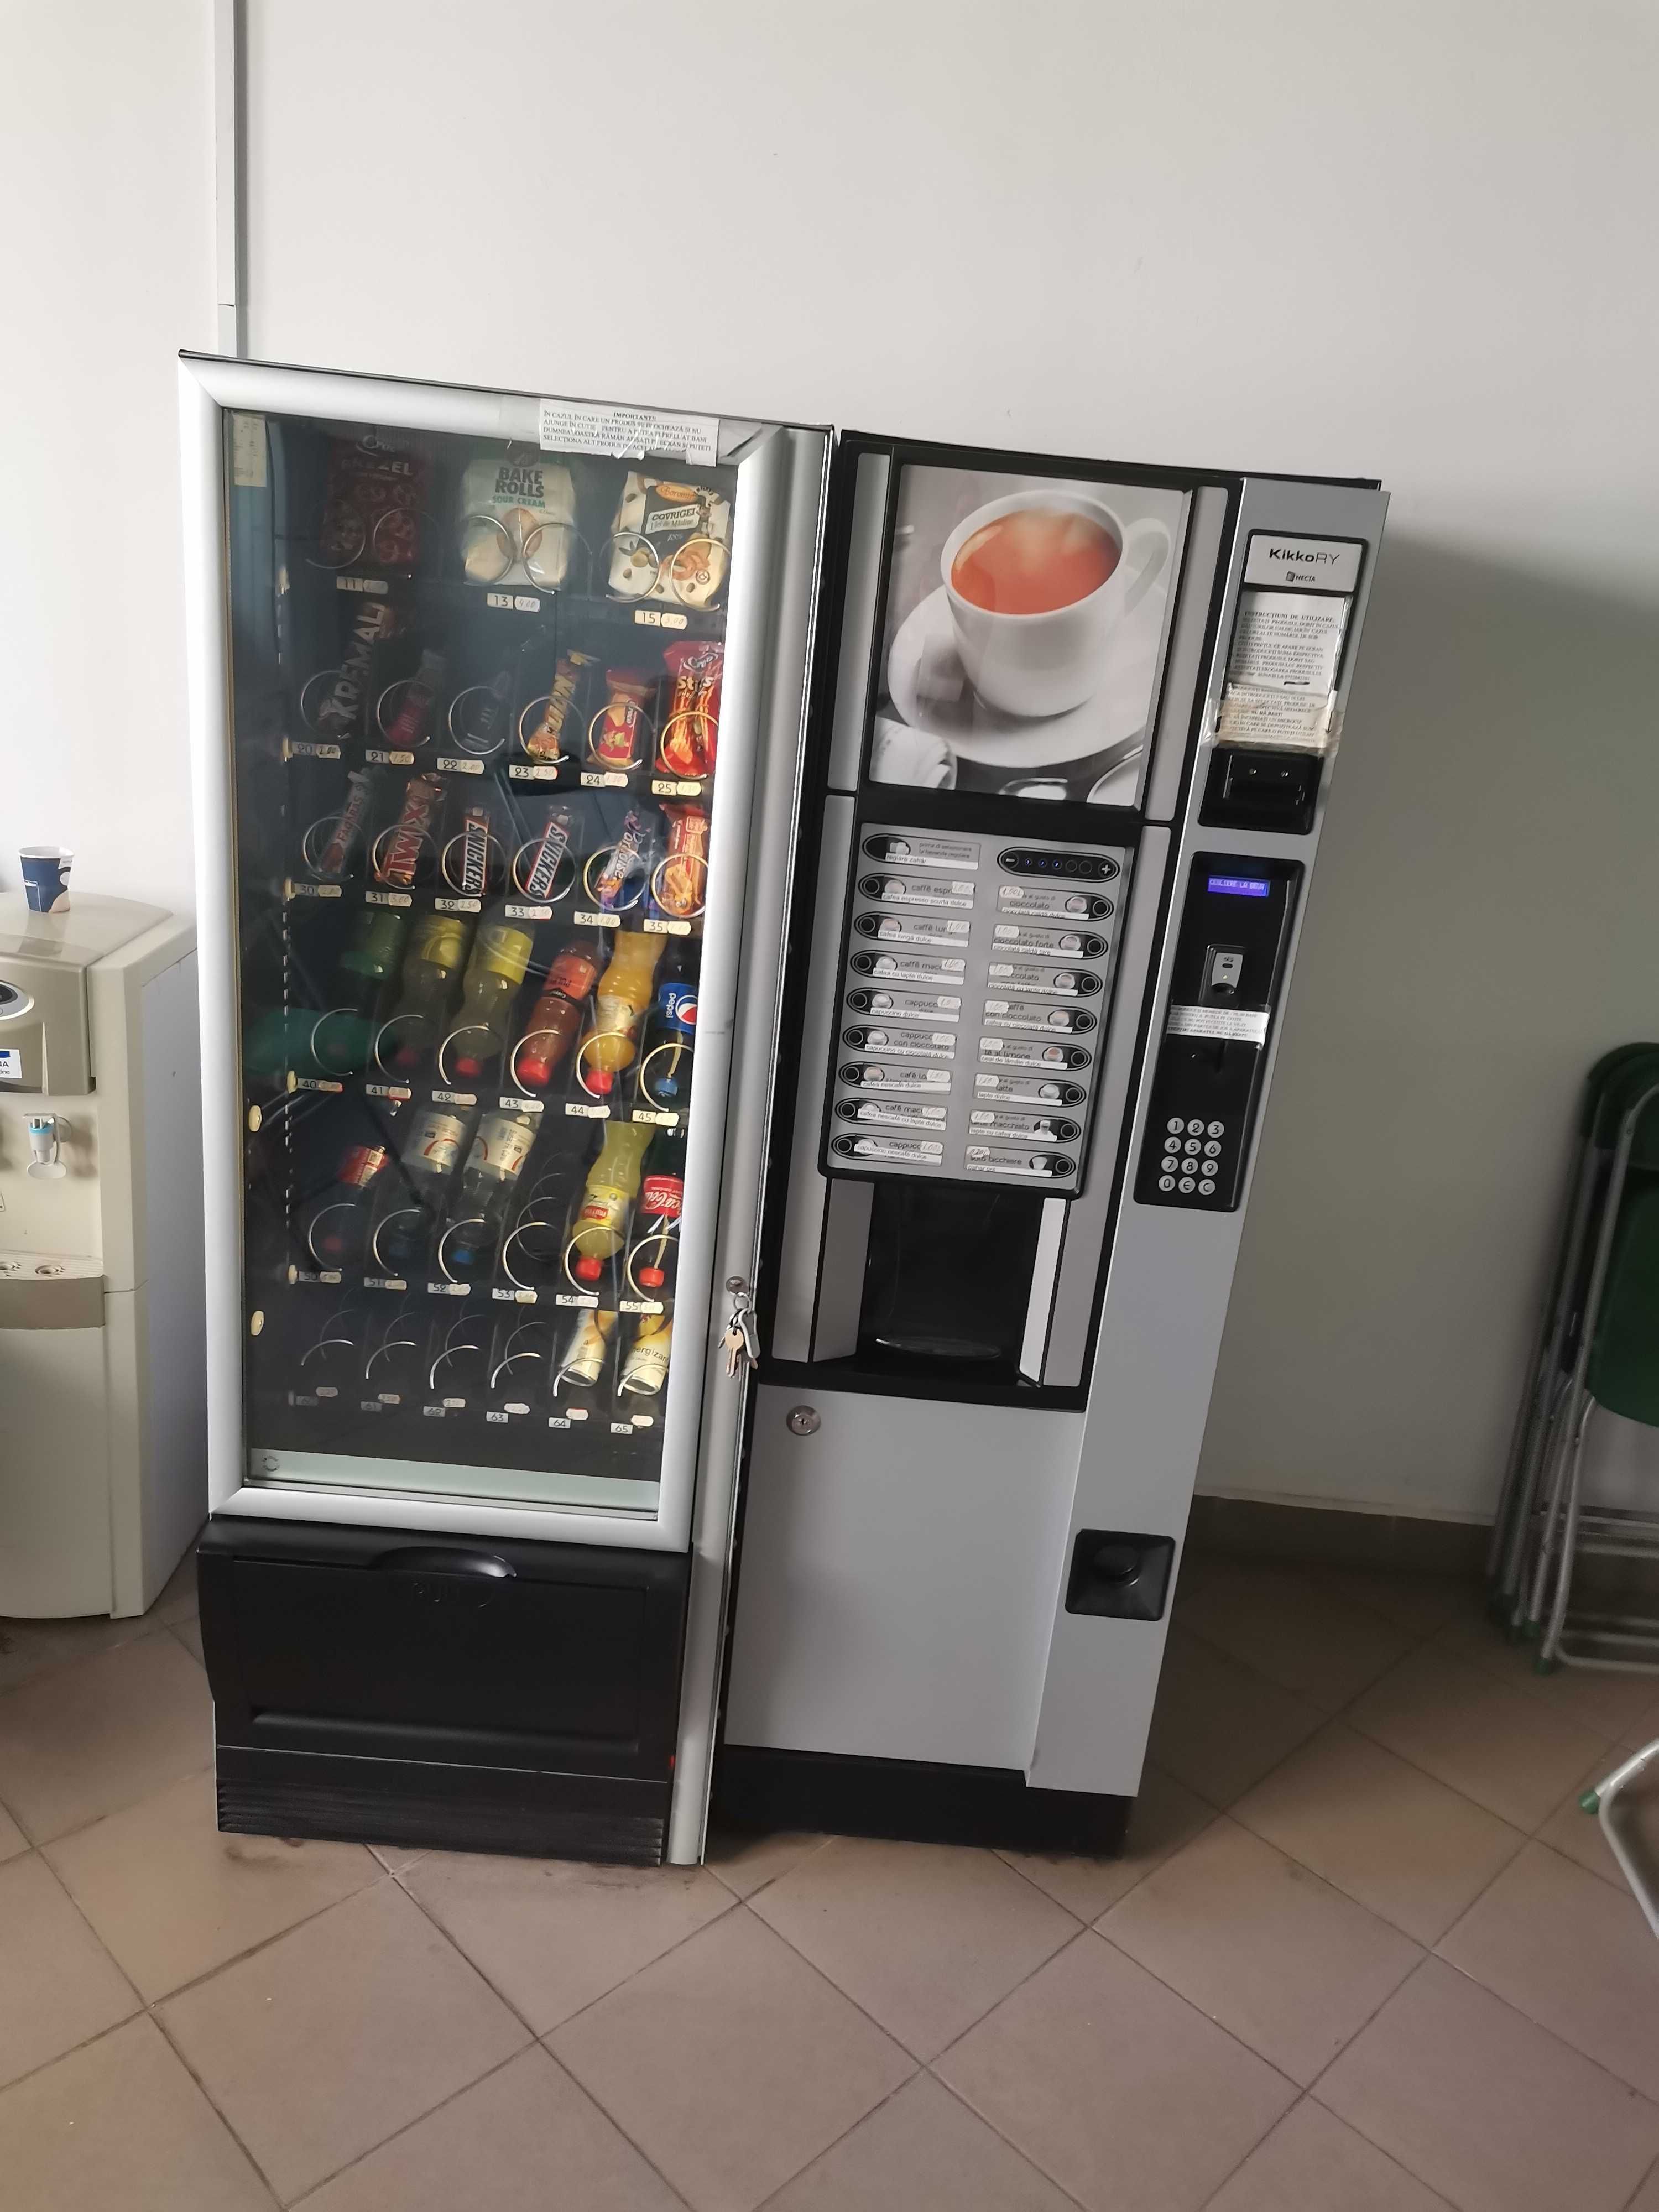 Automat de cafea si distribuitor de produse confectionate.